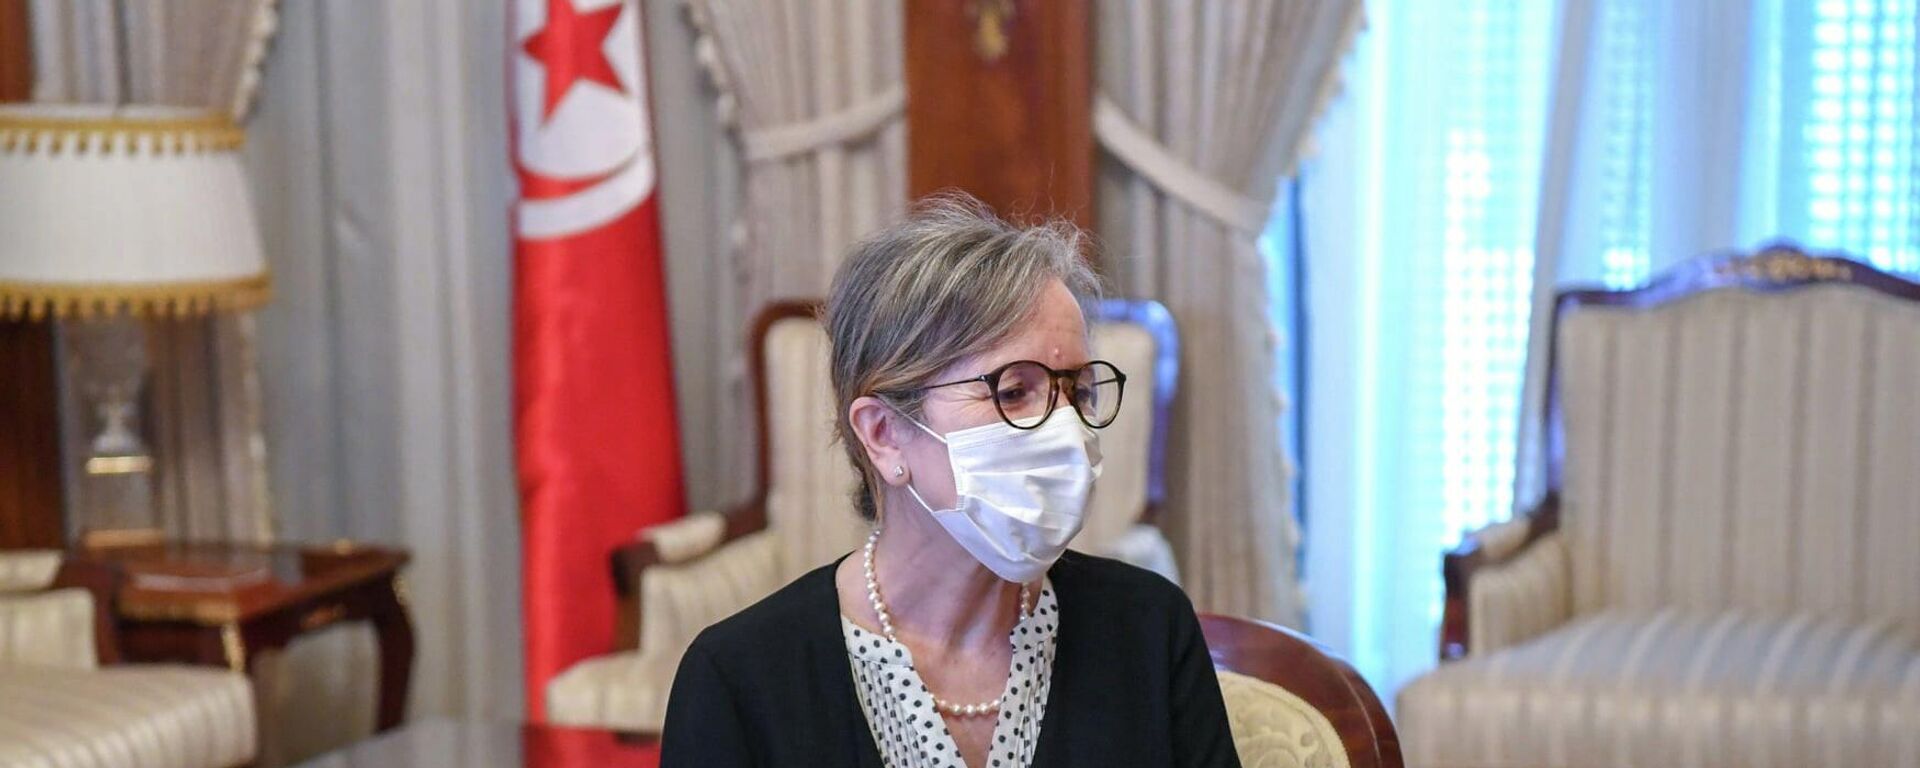 Tunus Cumhurbaşkanlığı tarafından yapılan yazılı açıklamada, Cumhurbaşkanı Kays Said'in Necla Budin'i hükümeti kurmakla görevlendirdiği belirtildi. Budin, Tunus tarihinde başbakanlık görevini üstlenen ilk kadın oldu. - Sputnik Türkiye, 1920, 29.09.2021